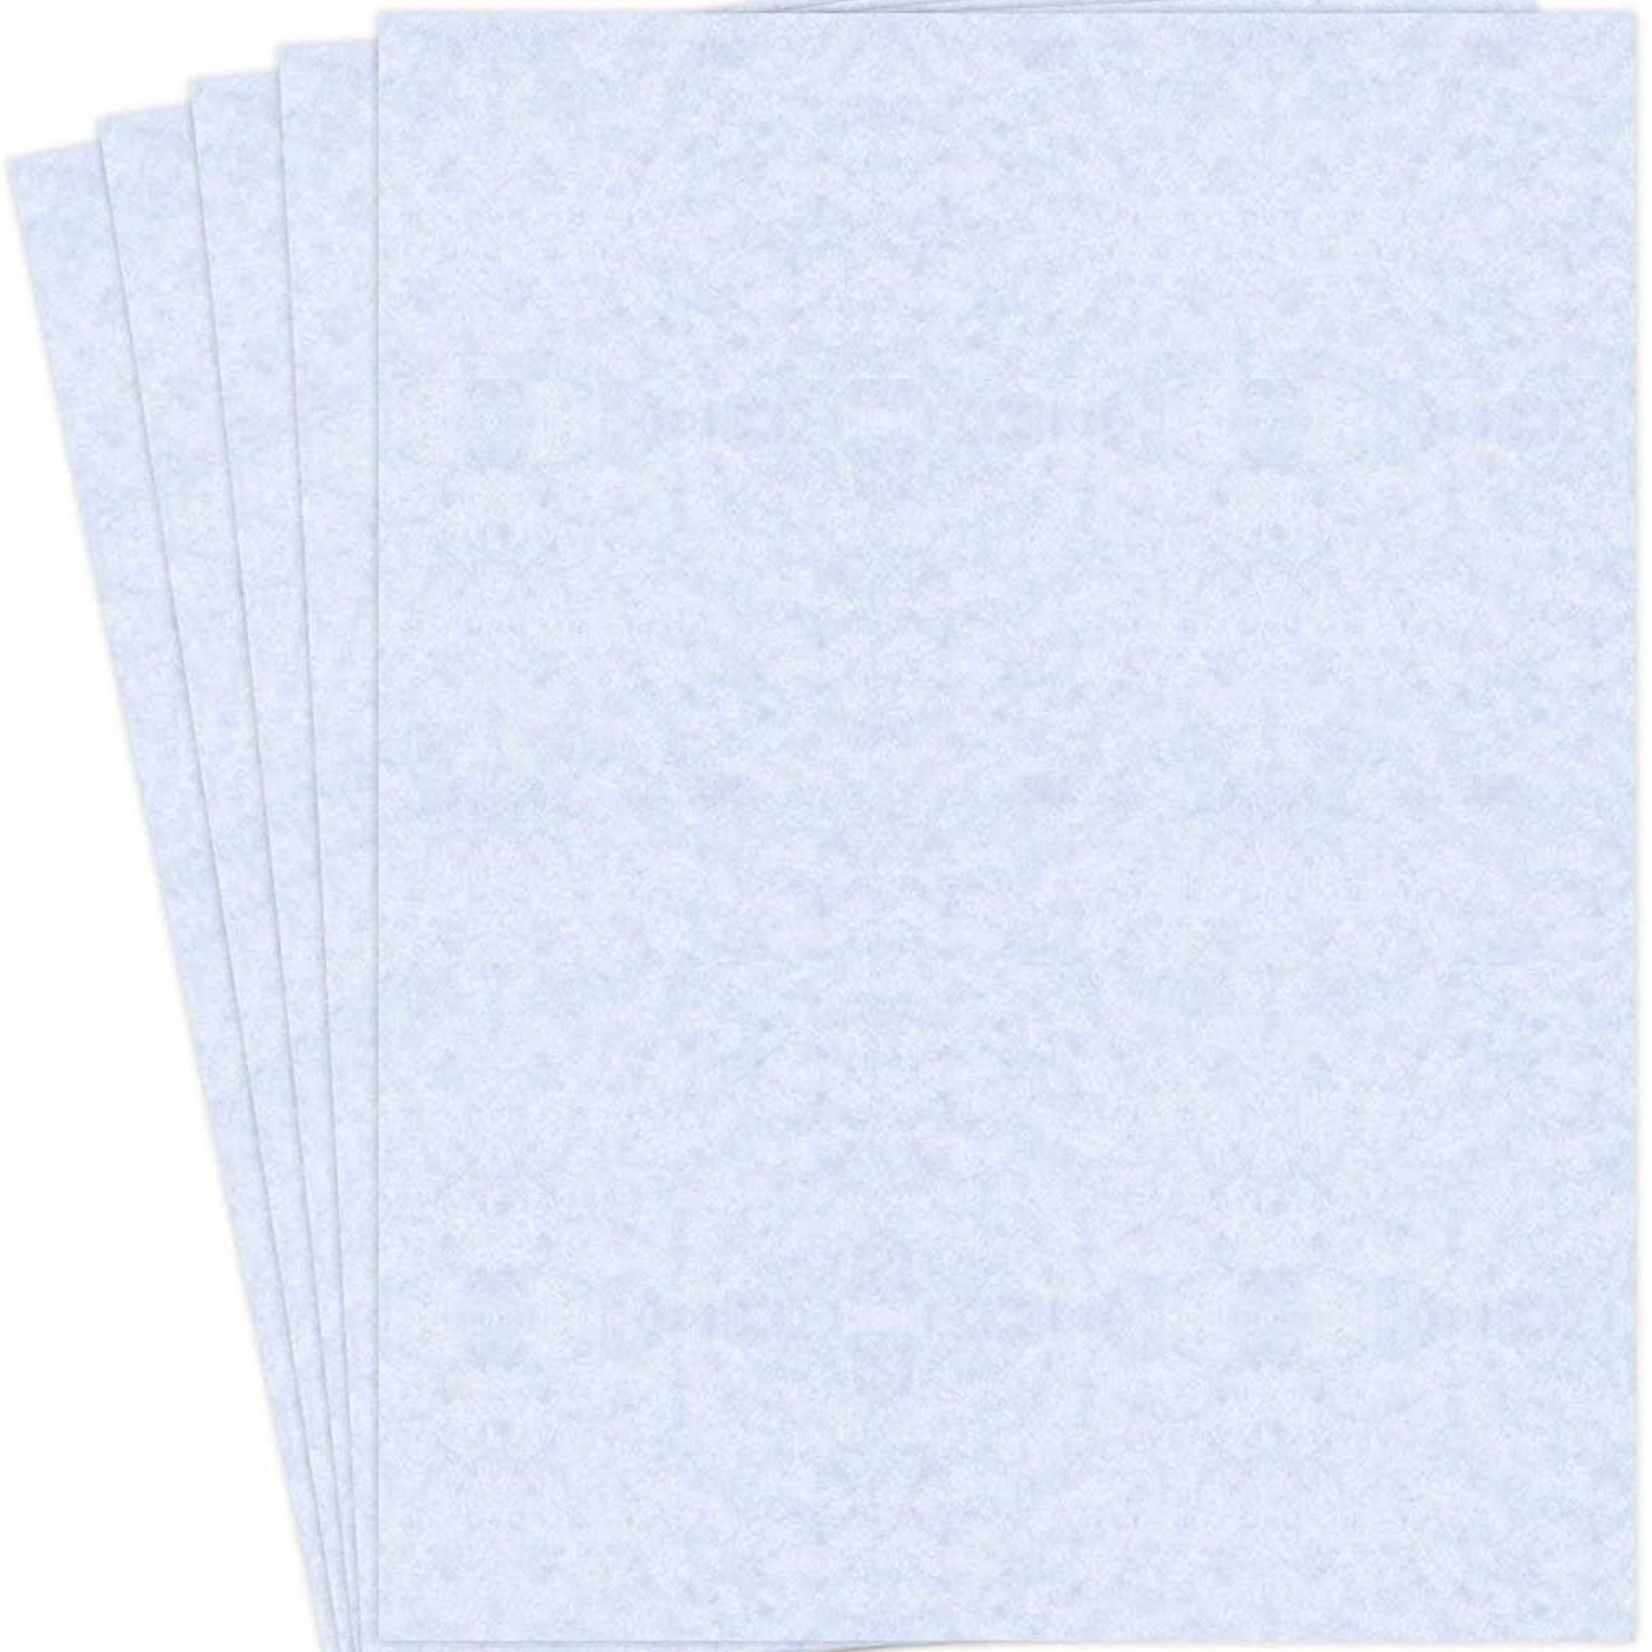 Blessed Parchment Paper 3PC - Blue